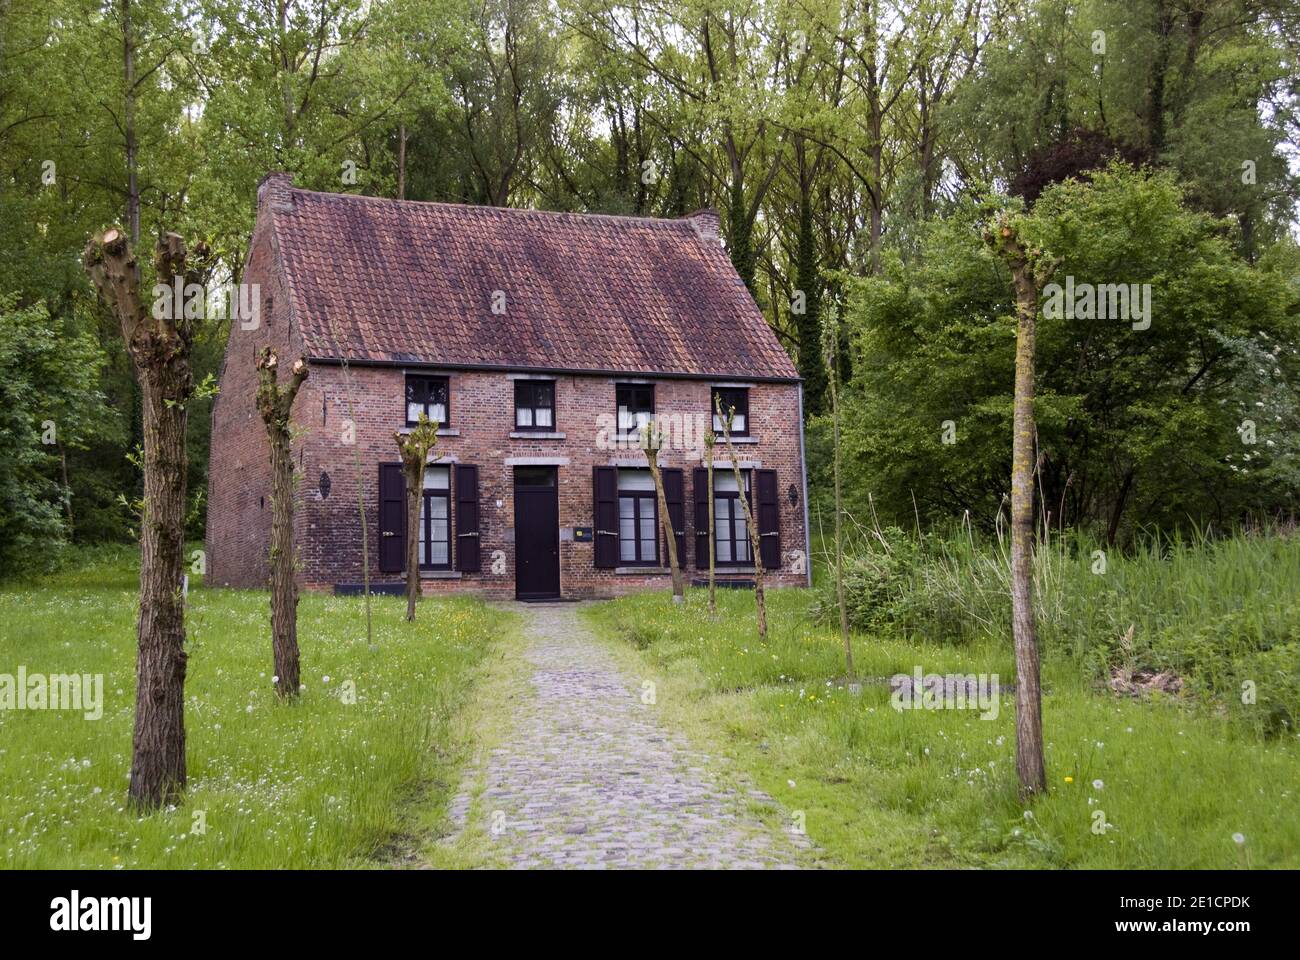 Une maison à Cuesmes (près de Mons) Belgique où l'artiste Vincent Van Gogh a vécu comme missionnaire chrétien auprès des mineurs de charbon, avant sa carrière artistique. Banque D'Images